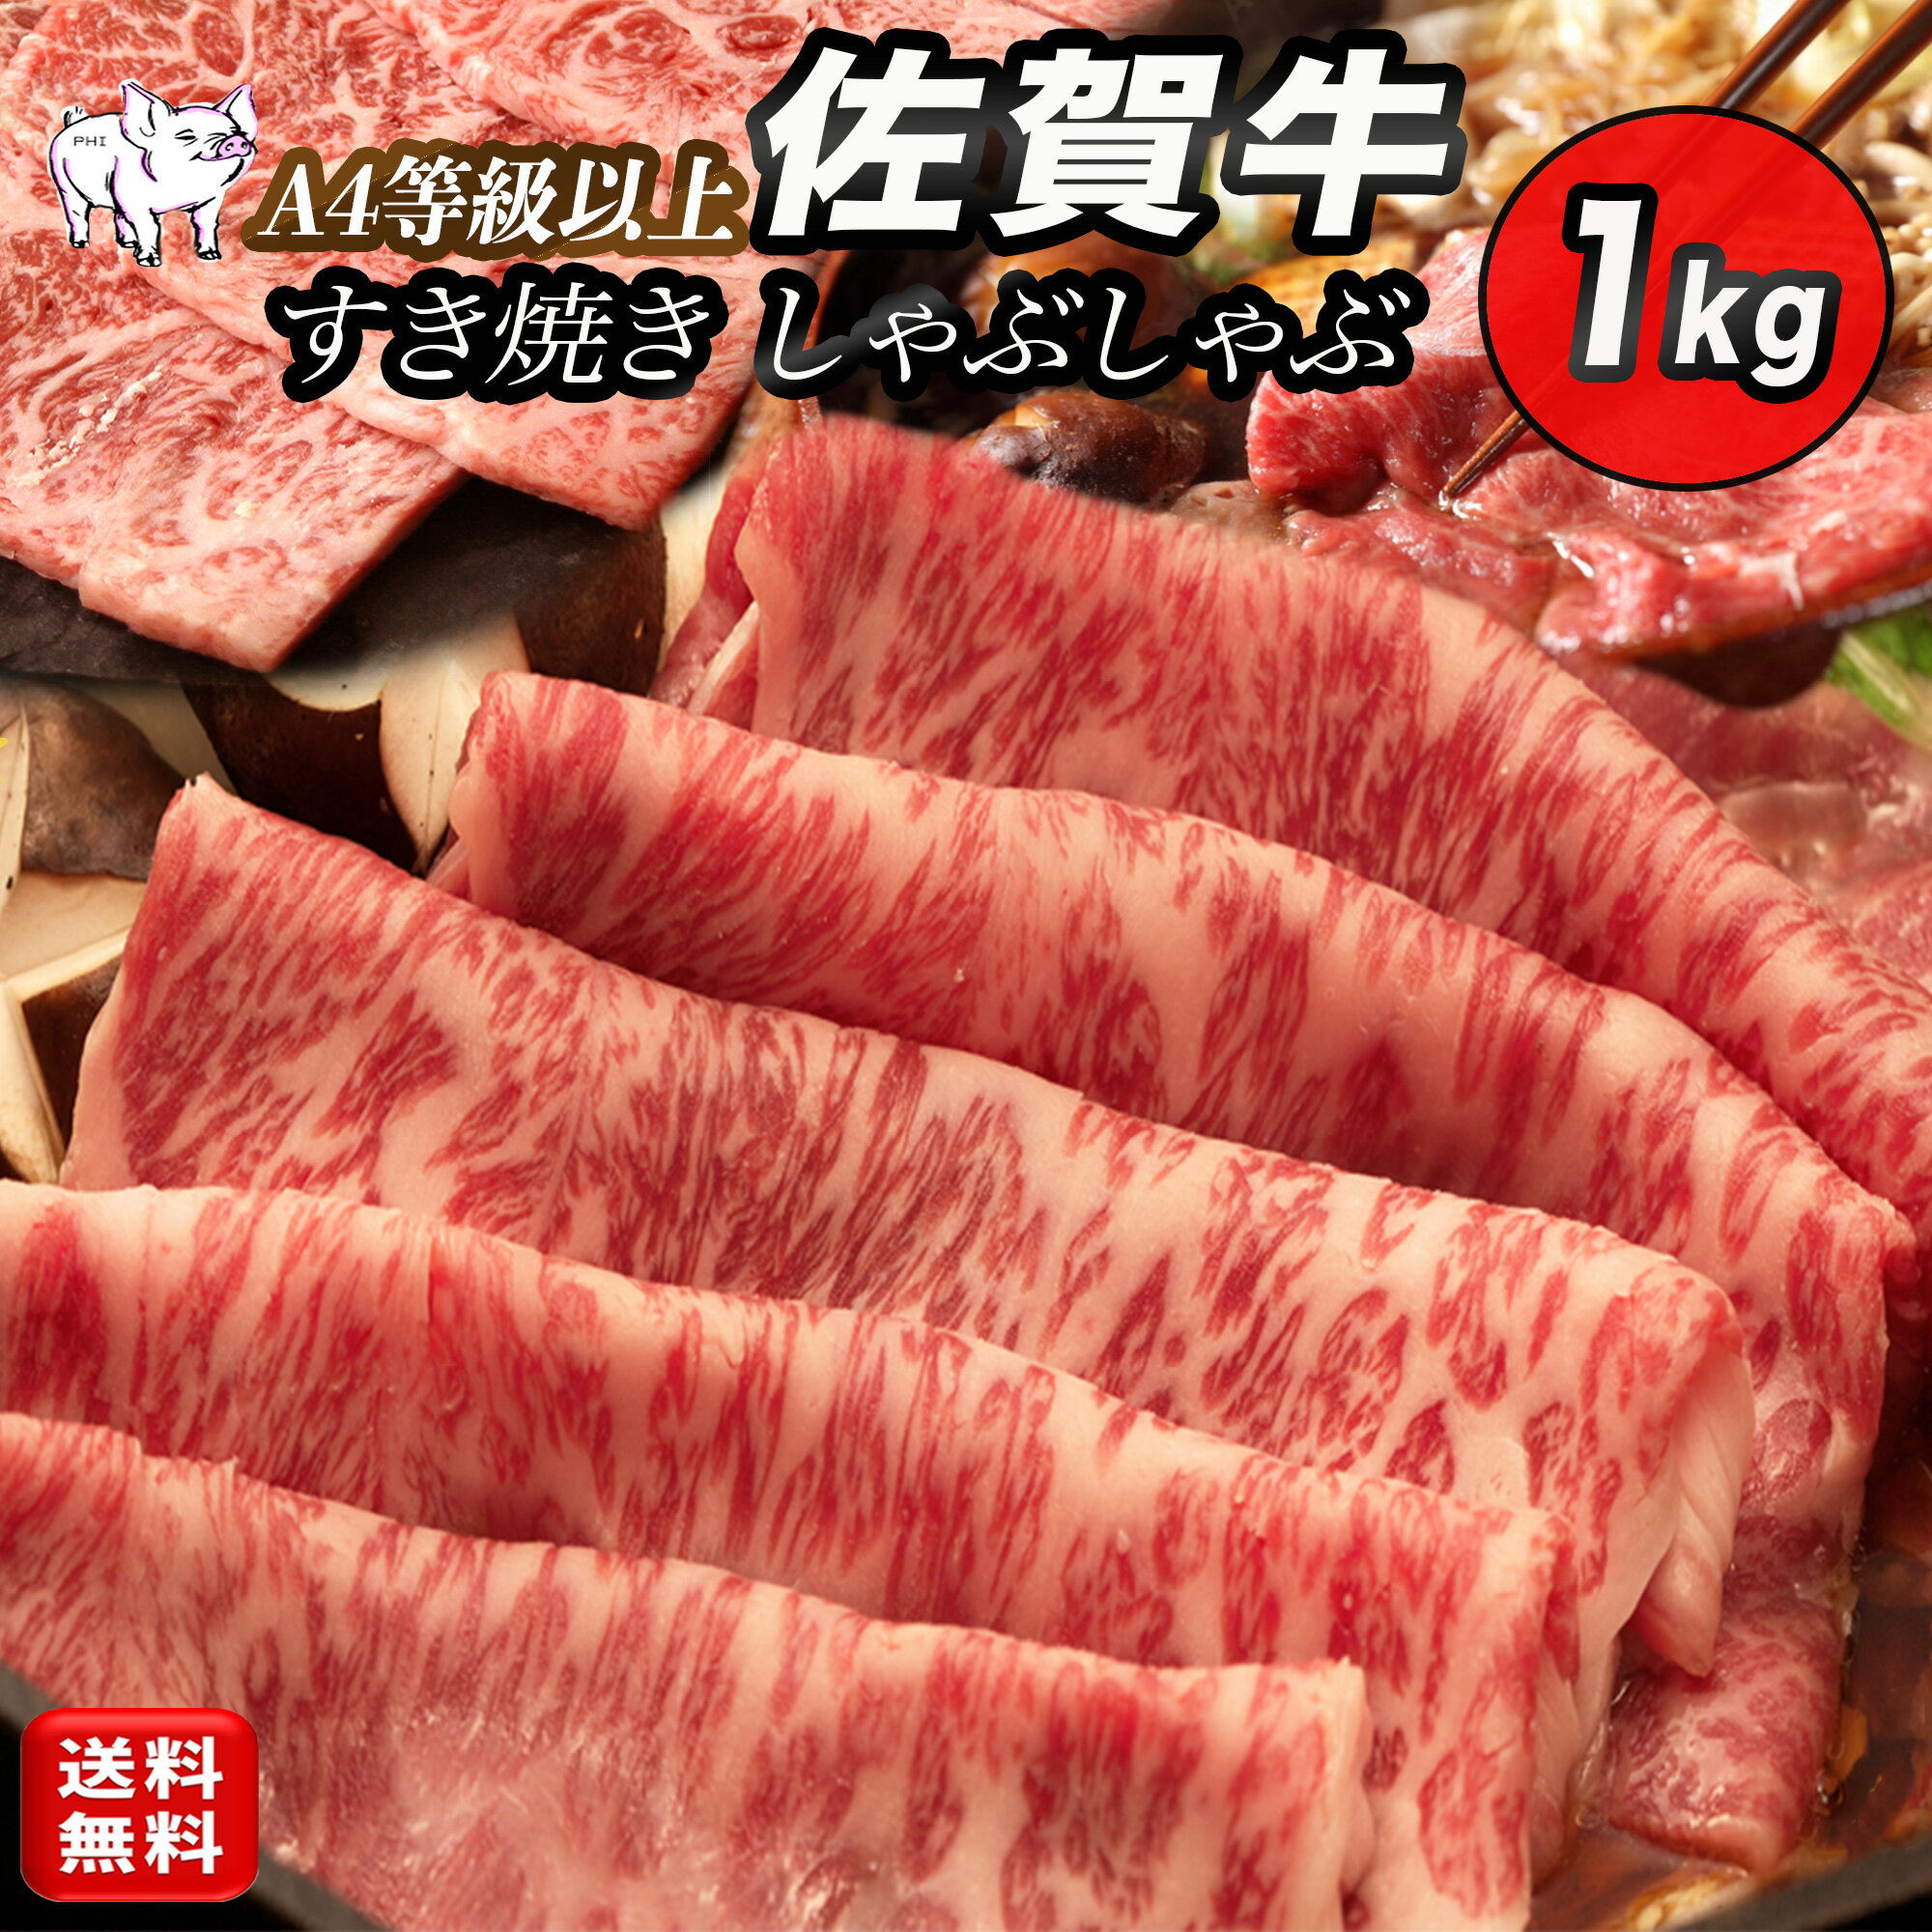 黒毛和牛 佐賀牛 すきやき しゃぶしゃぶ 肉 1kg (5~6人前) 牛肉 すき焼き 肉 ギフト 1